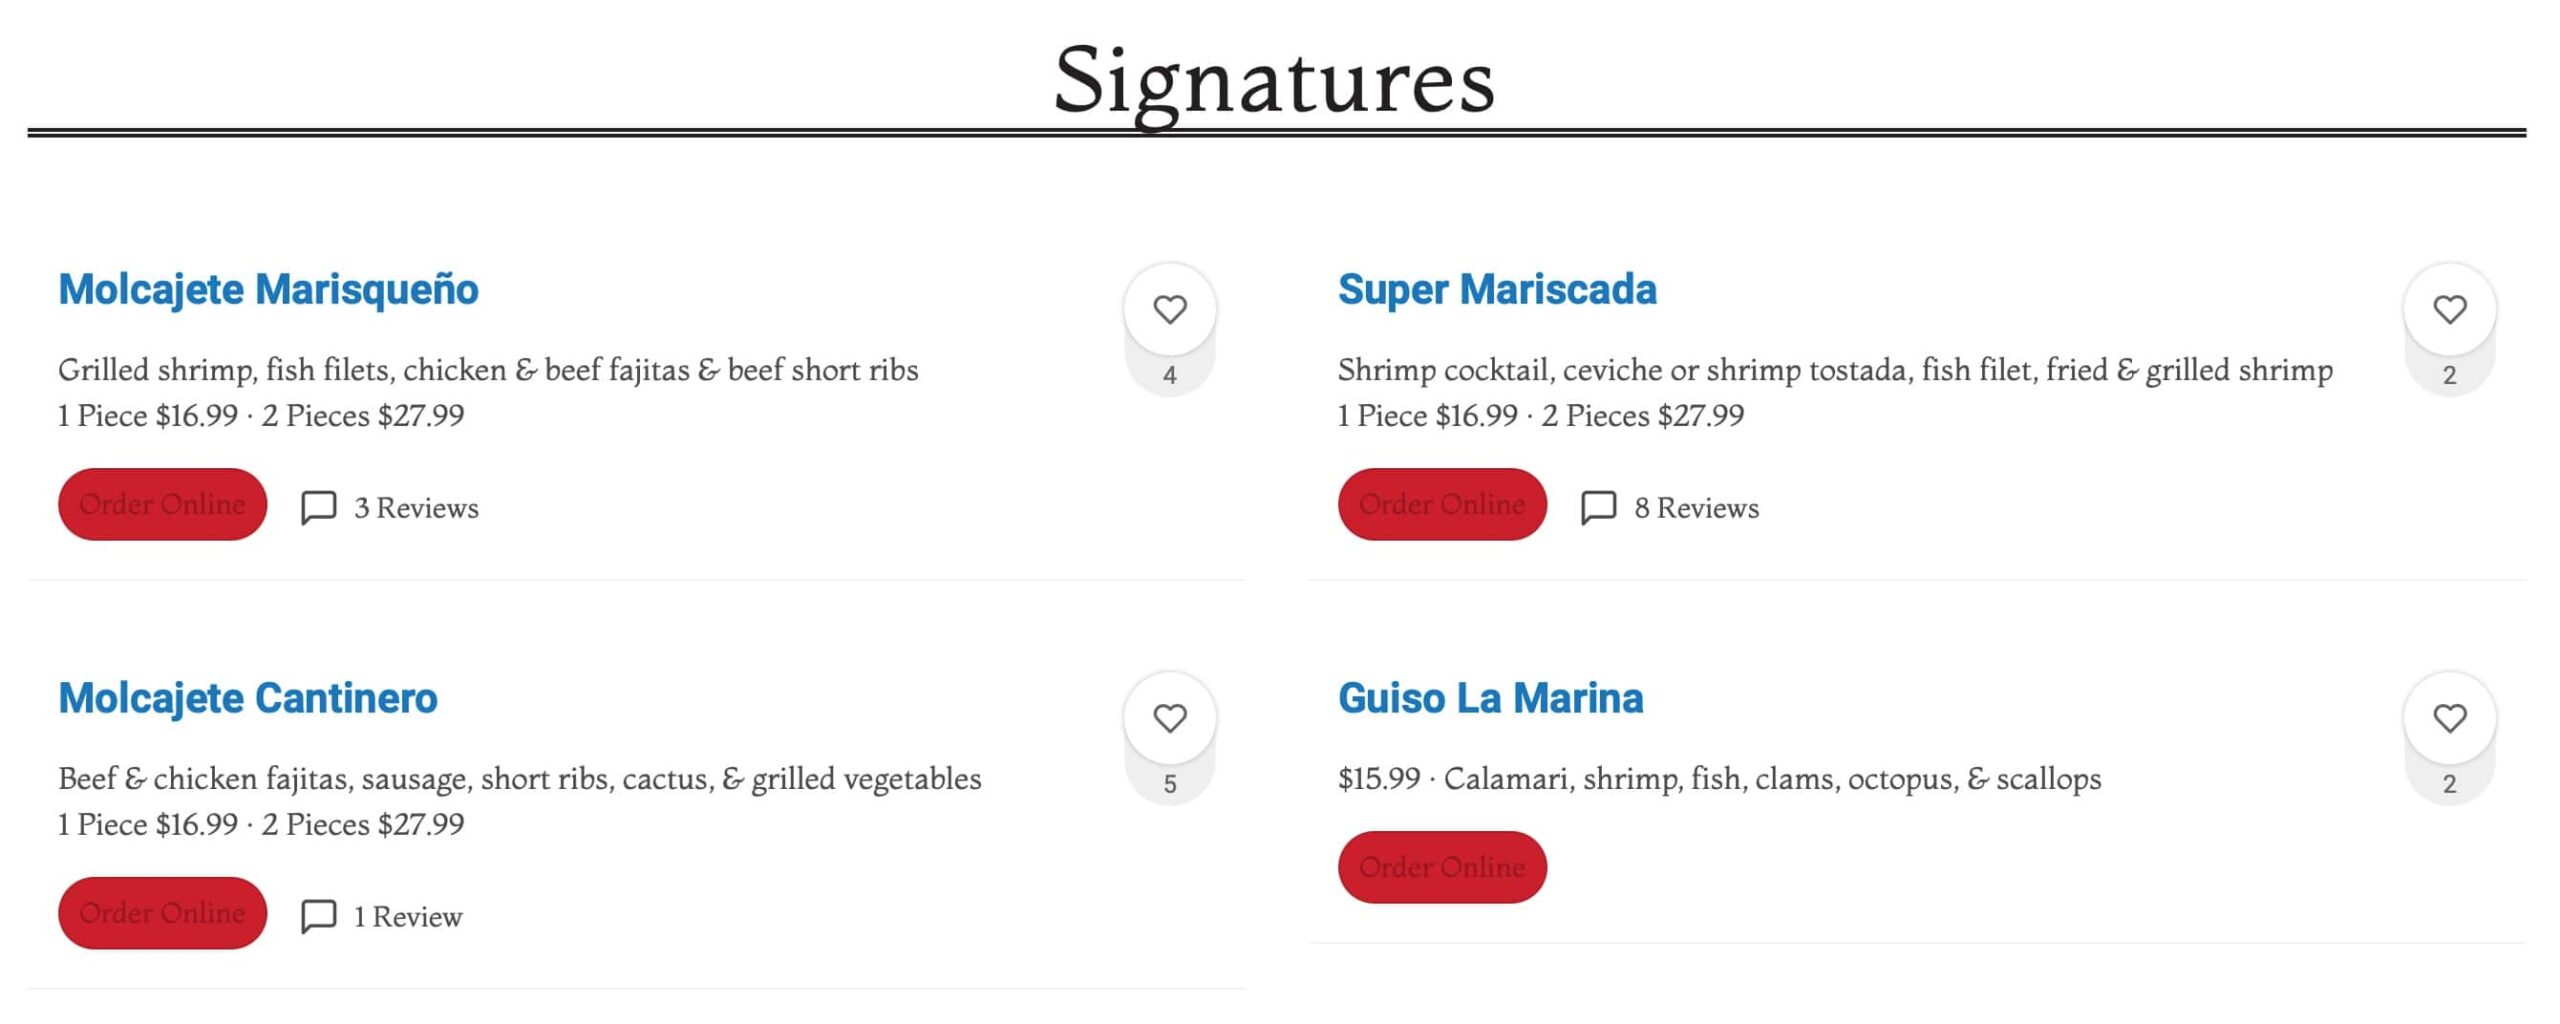 Mariscos La Marina Signatures Menu